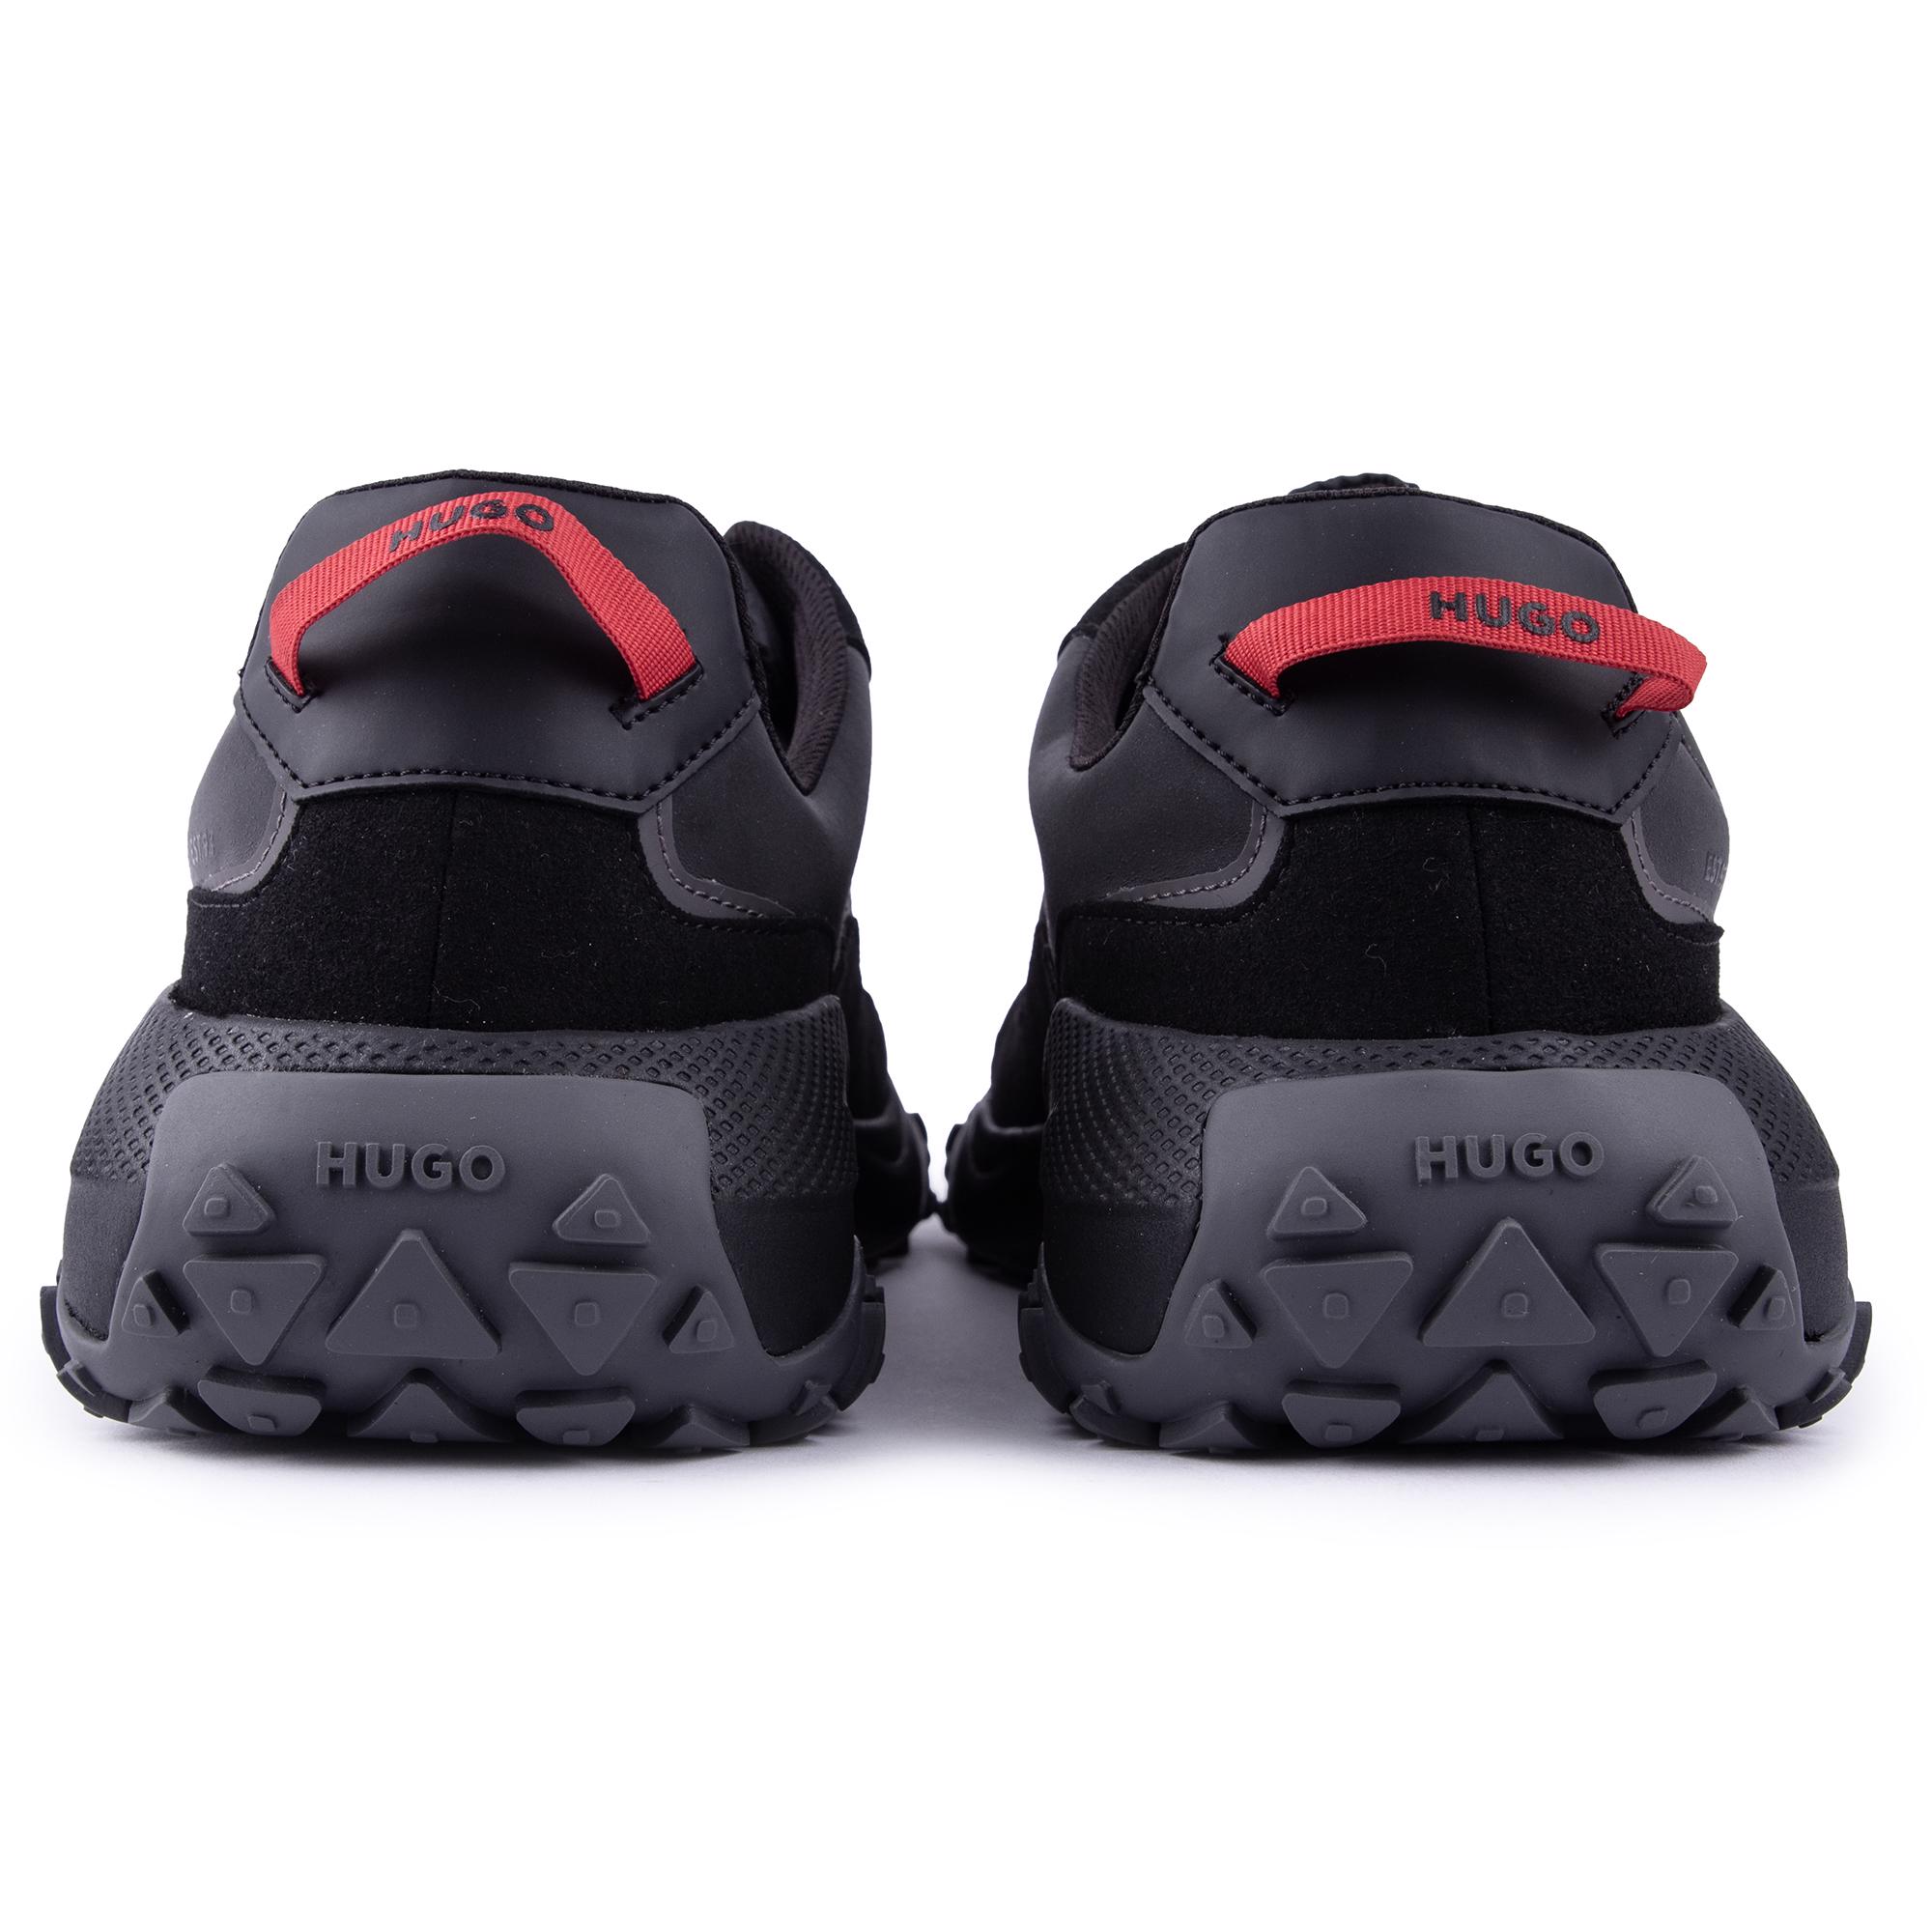 HUGO Mens Go1st Running Style Sneakers Black